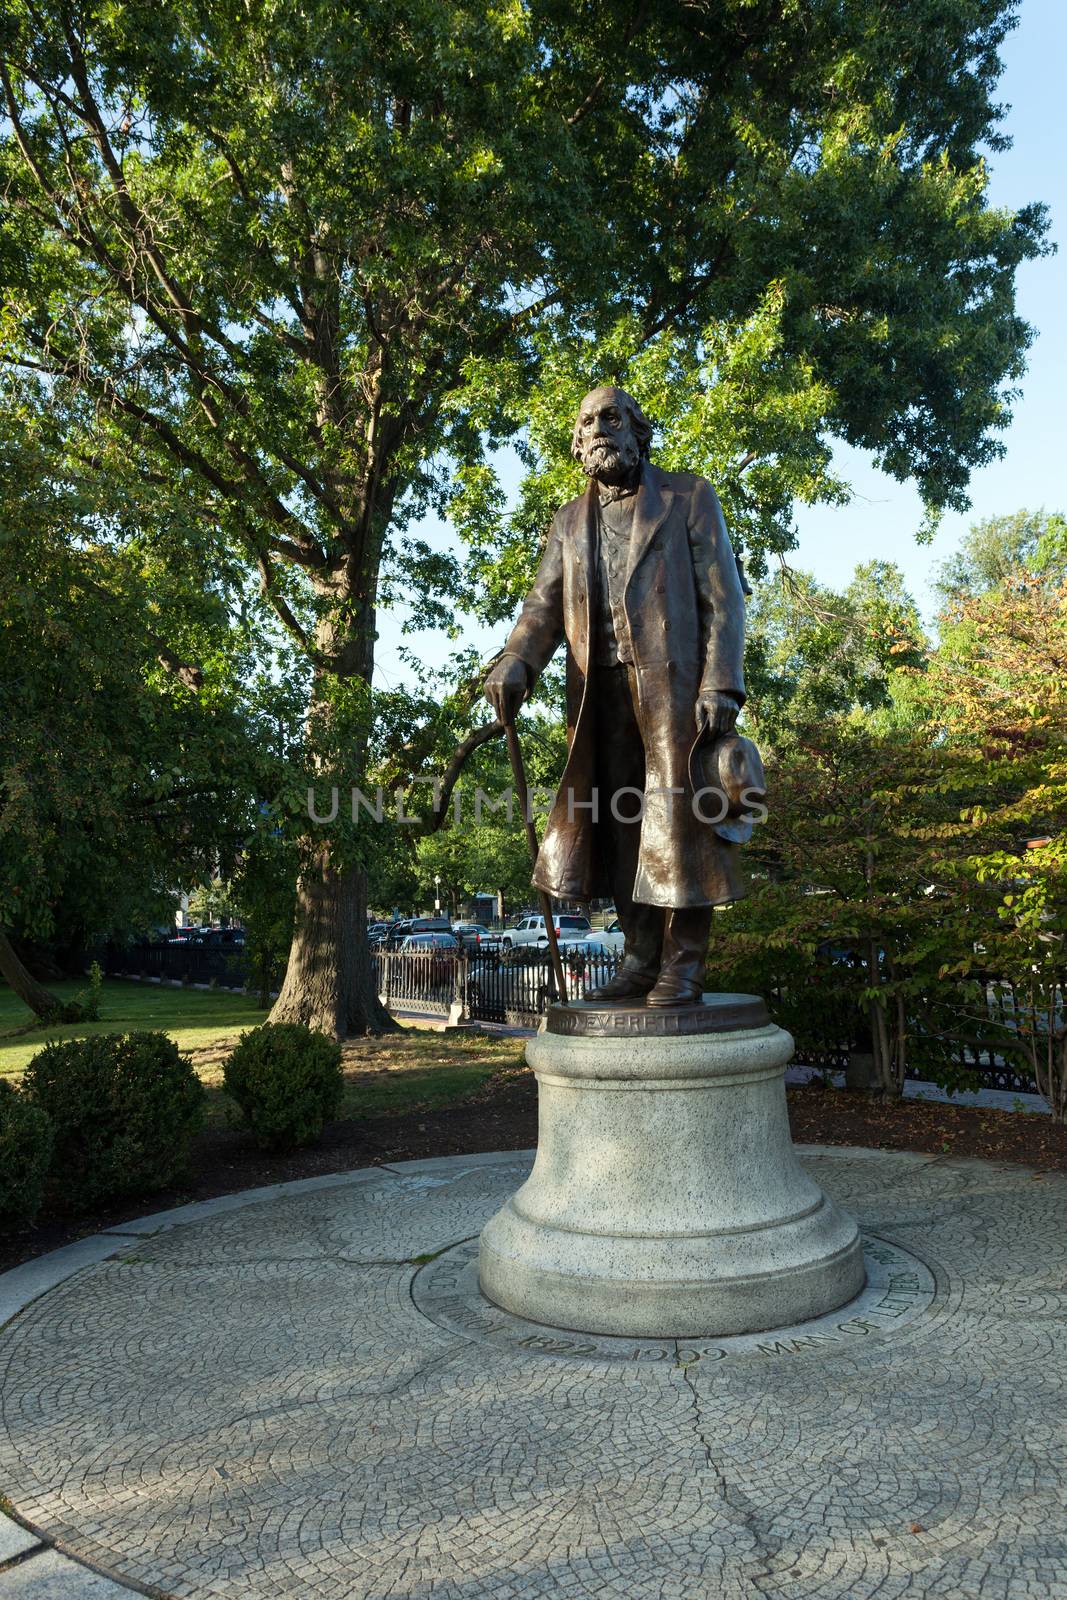 Public statue of Edward Everett Hale found in Bostons Public Garden in Massachusetts. 